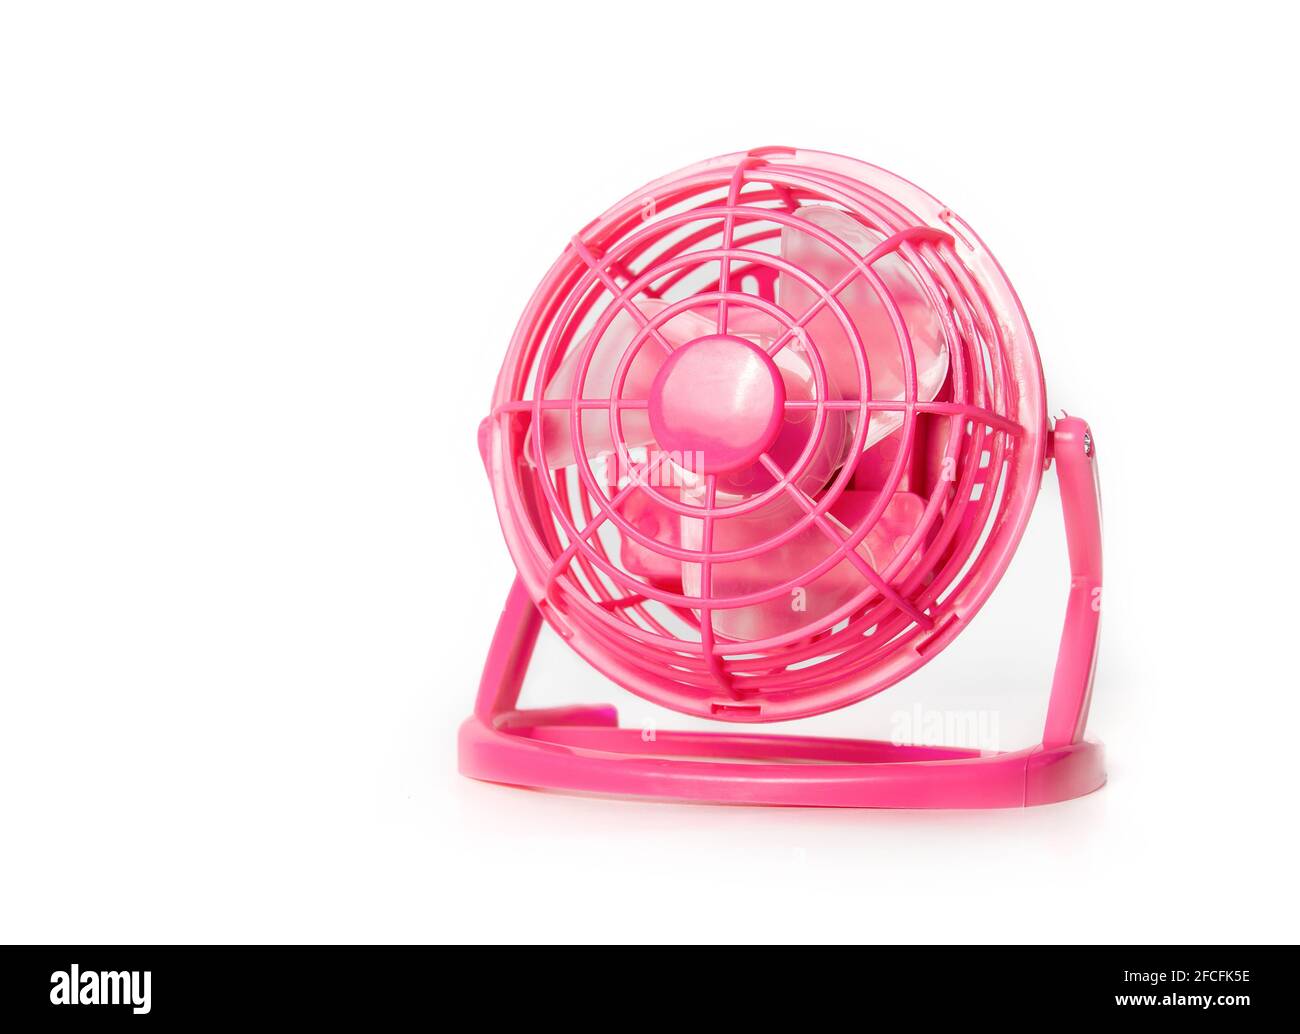 Mini ventola. Ventilatore portatile da tavolo di piccole dimensioni rosa  caldo con funzionamento a batteria per raffreddare e far circolare l'aria  durante le calde giornate estive. Utilizzo in ufficio, viaggio in auto